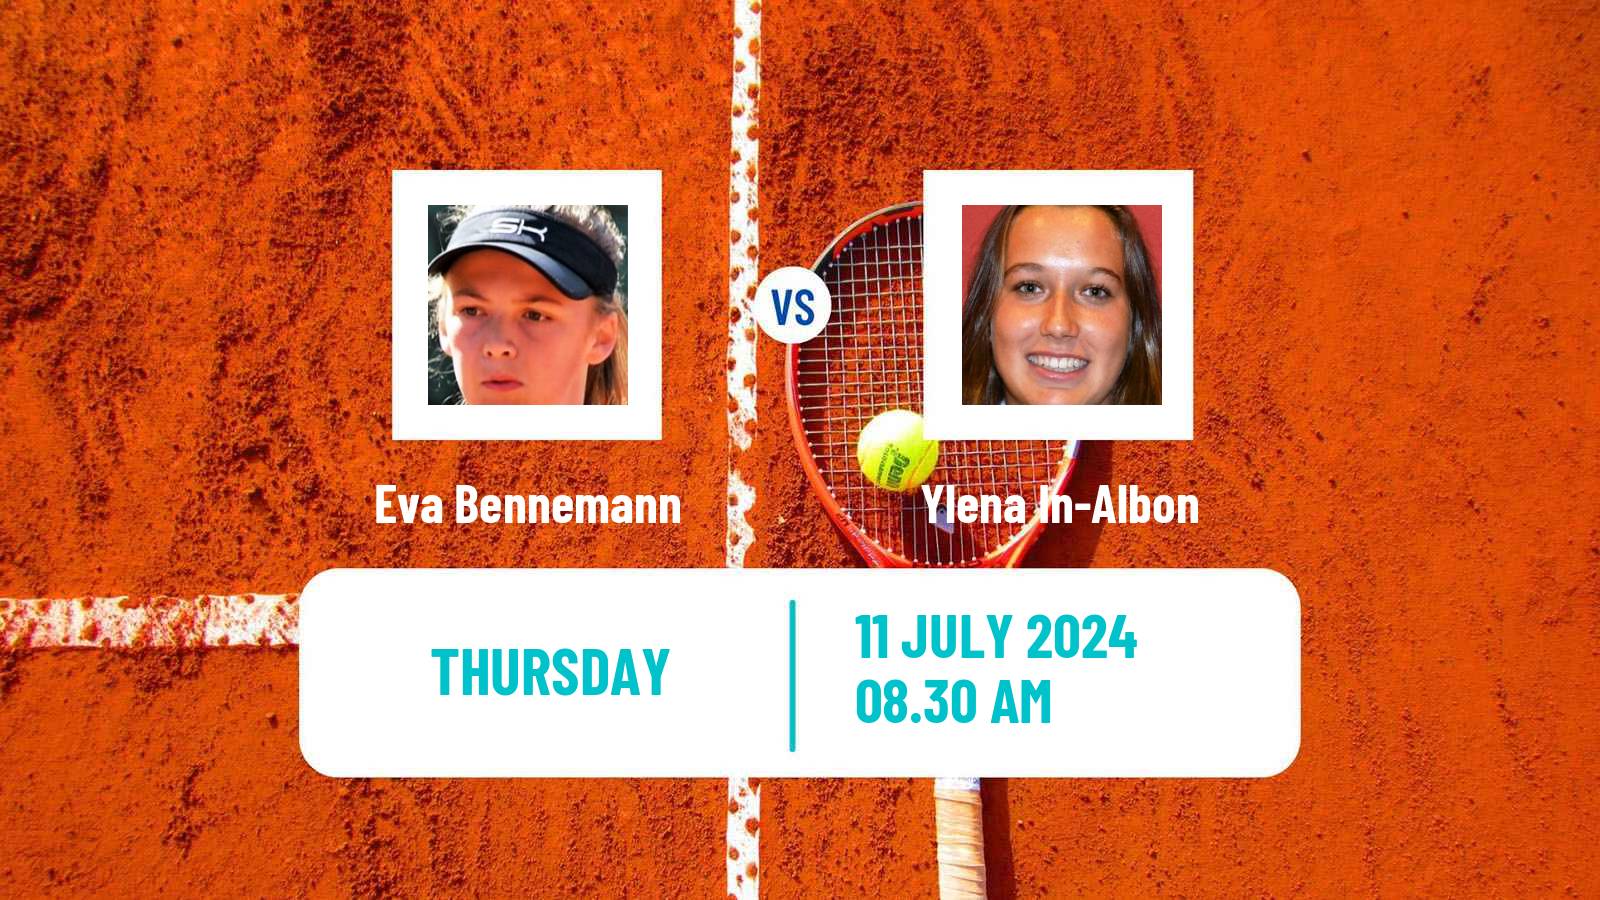 Tennis ITF W35 Aschaffenburg Women Eva Bennemann - Ylena In-Albon